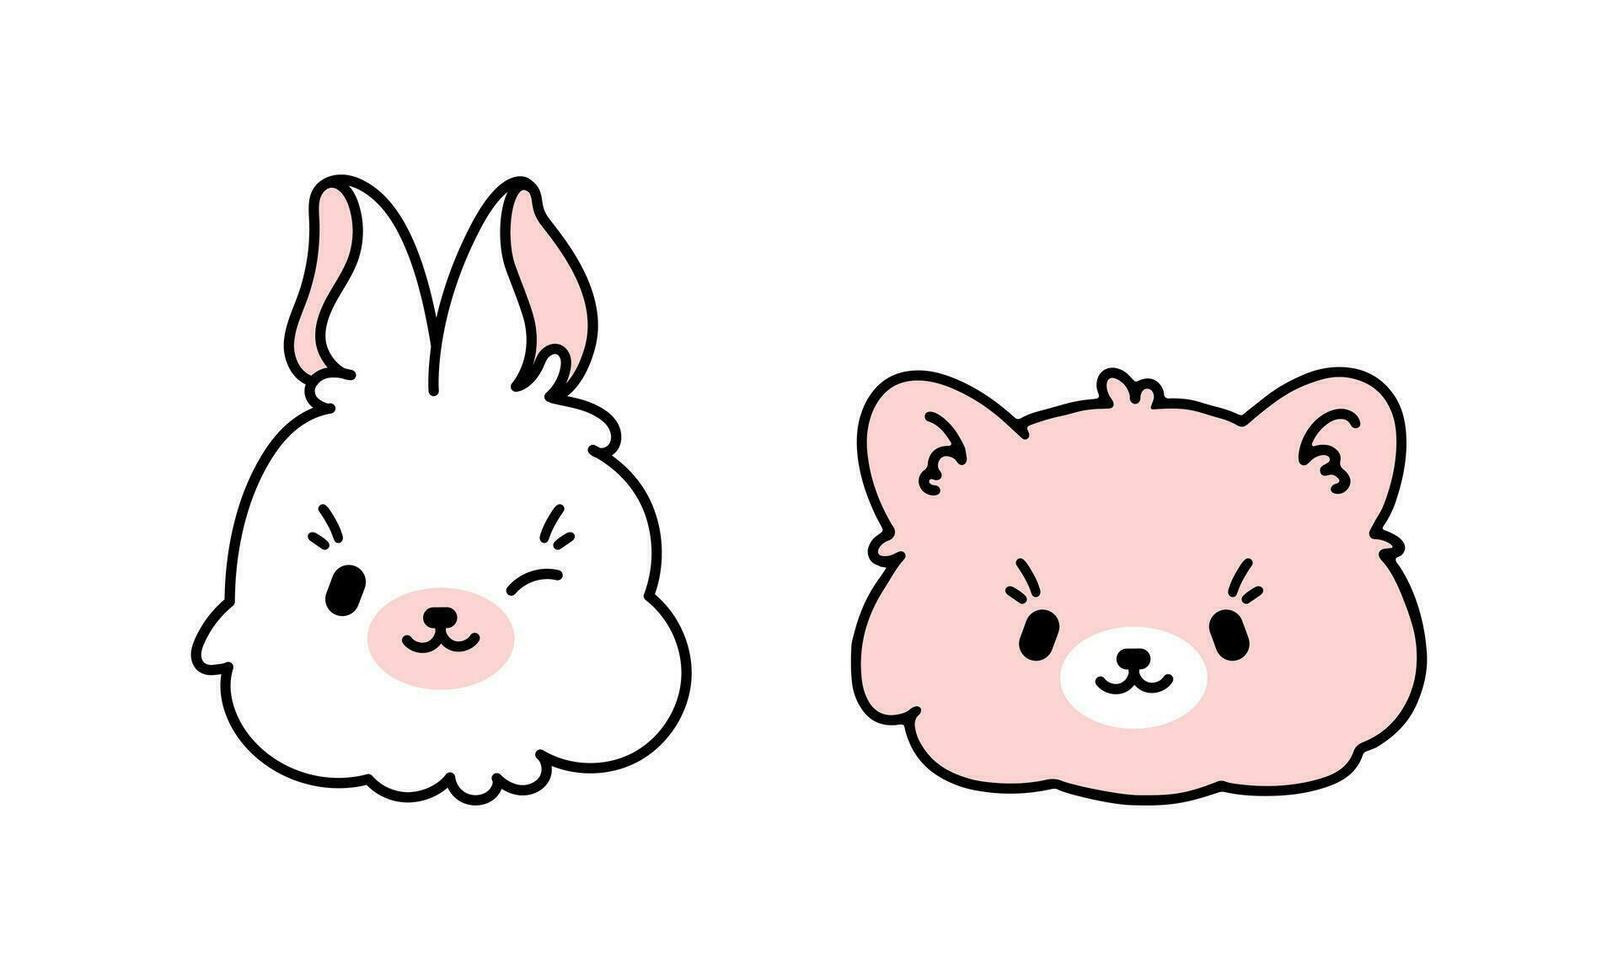 süß Vektor Gesichter von ein Kaninchen, Hase, tragen, Kätzchen zum dekorieren Kinder- Räume. komisch Aufkleber zum Mädchen im Weiß und Rosa.